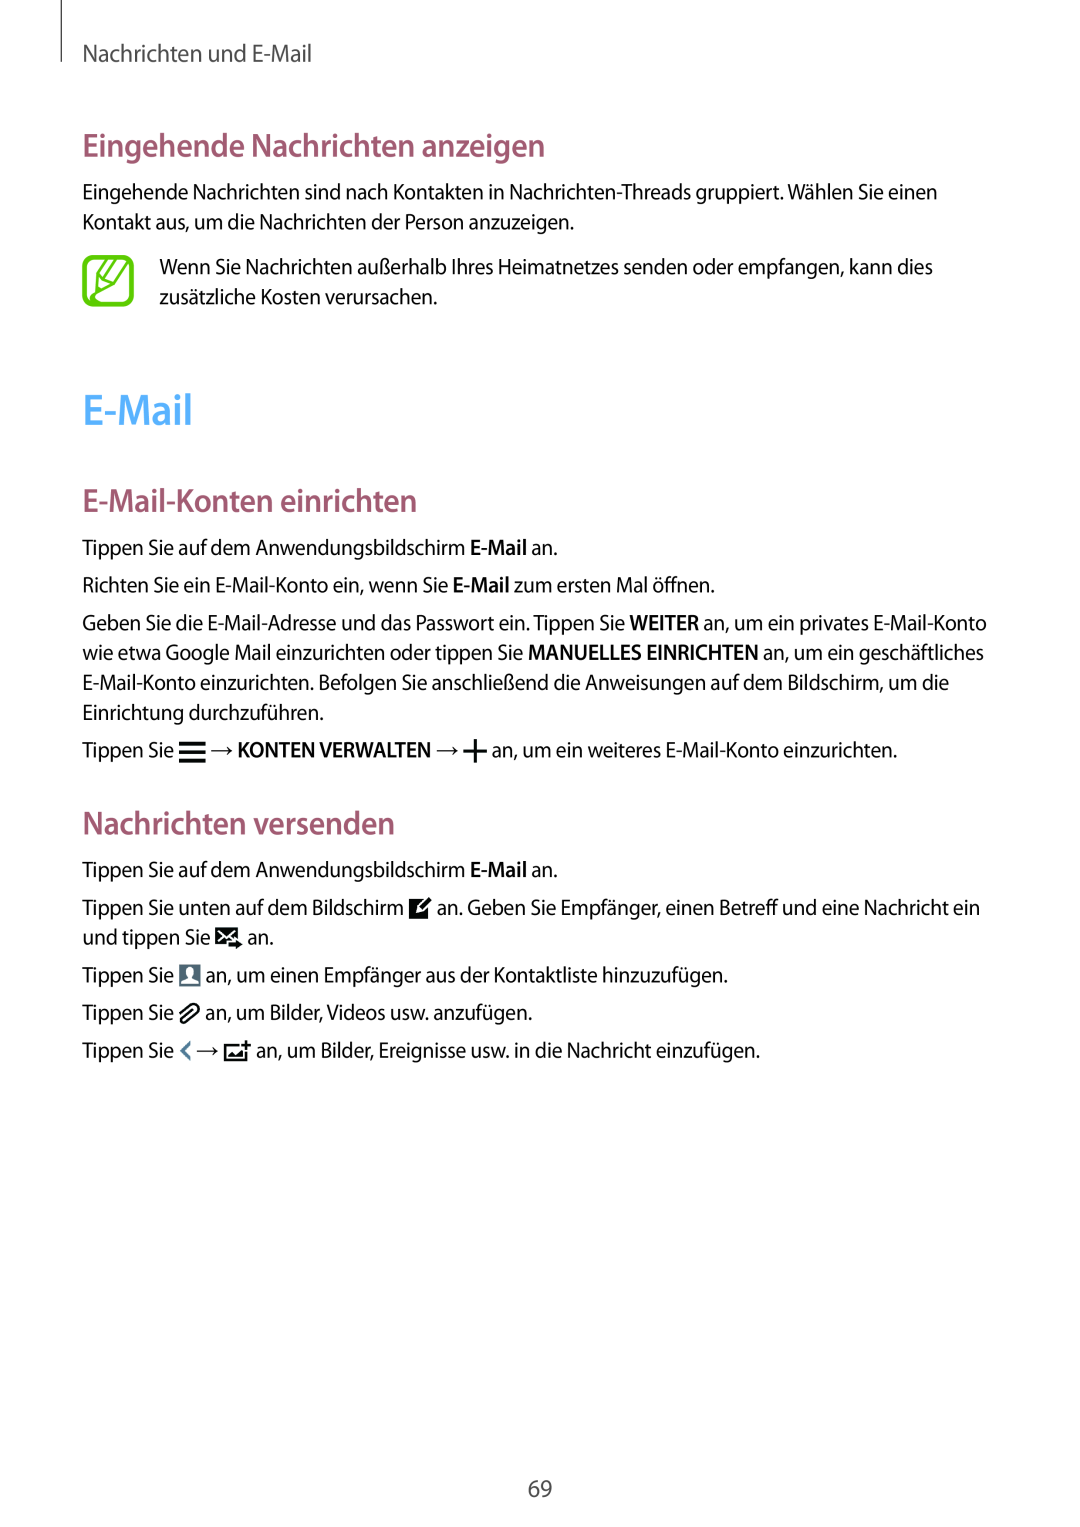 Samsung SM-G901FZDABAL manual Eingehende Nachrichten anzeigen, E-Mail-Konten einrichten, Nachrichten versenden 